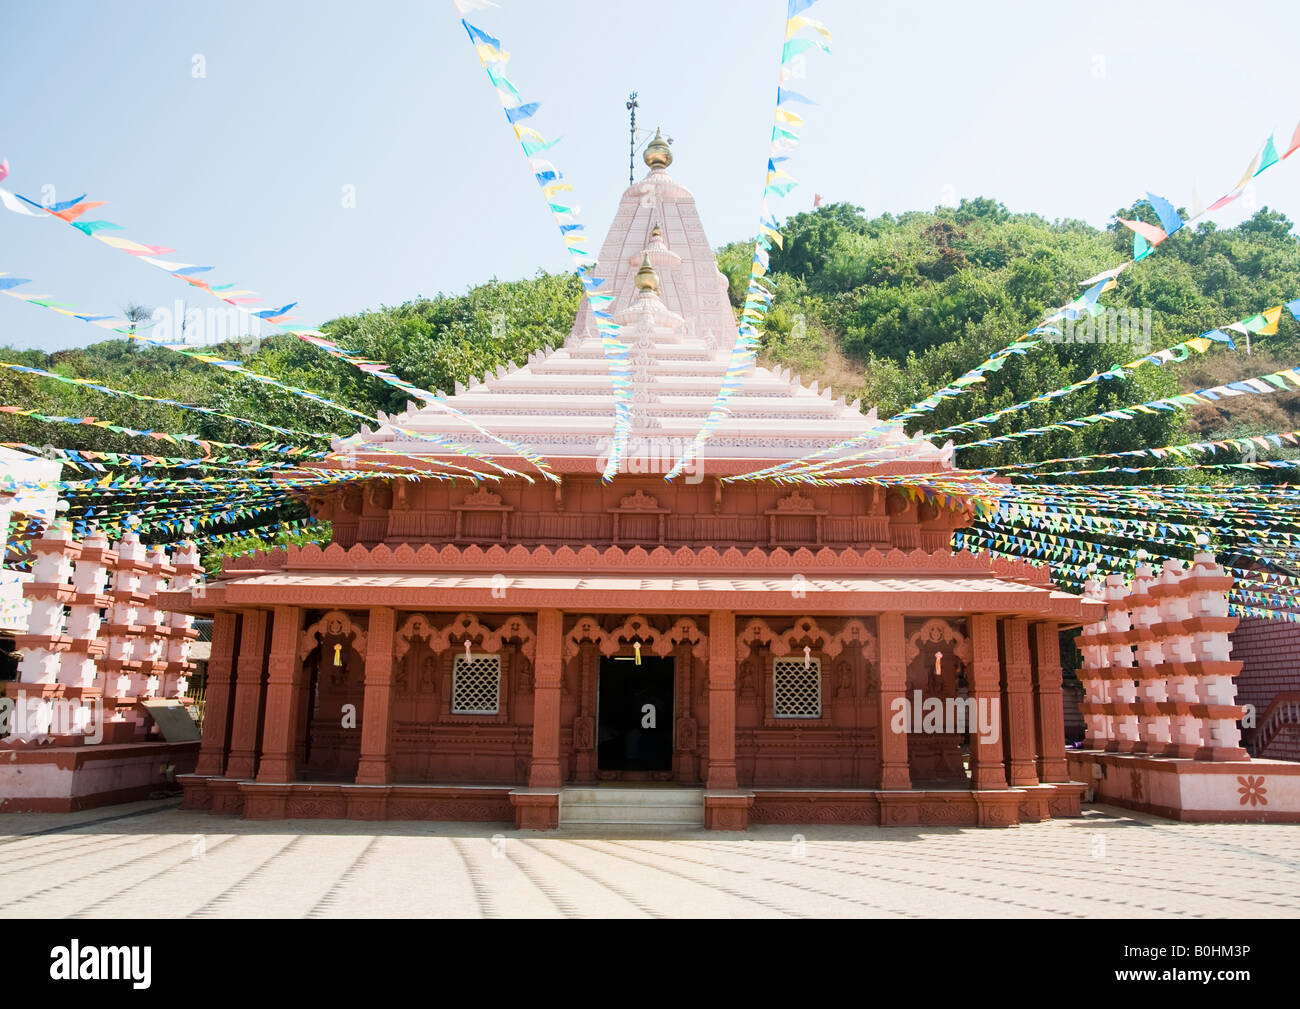 Dies ist der Tempel des Lord Ganesh am Strand, wo die Gottheit des Ganpati in seiner natürlichen Form, genannt Swayambhu entstanden. Stockfoto